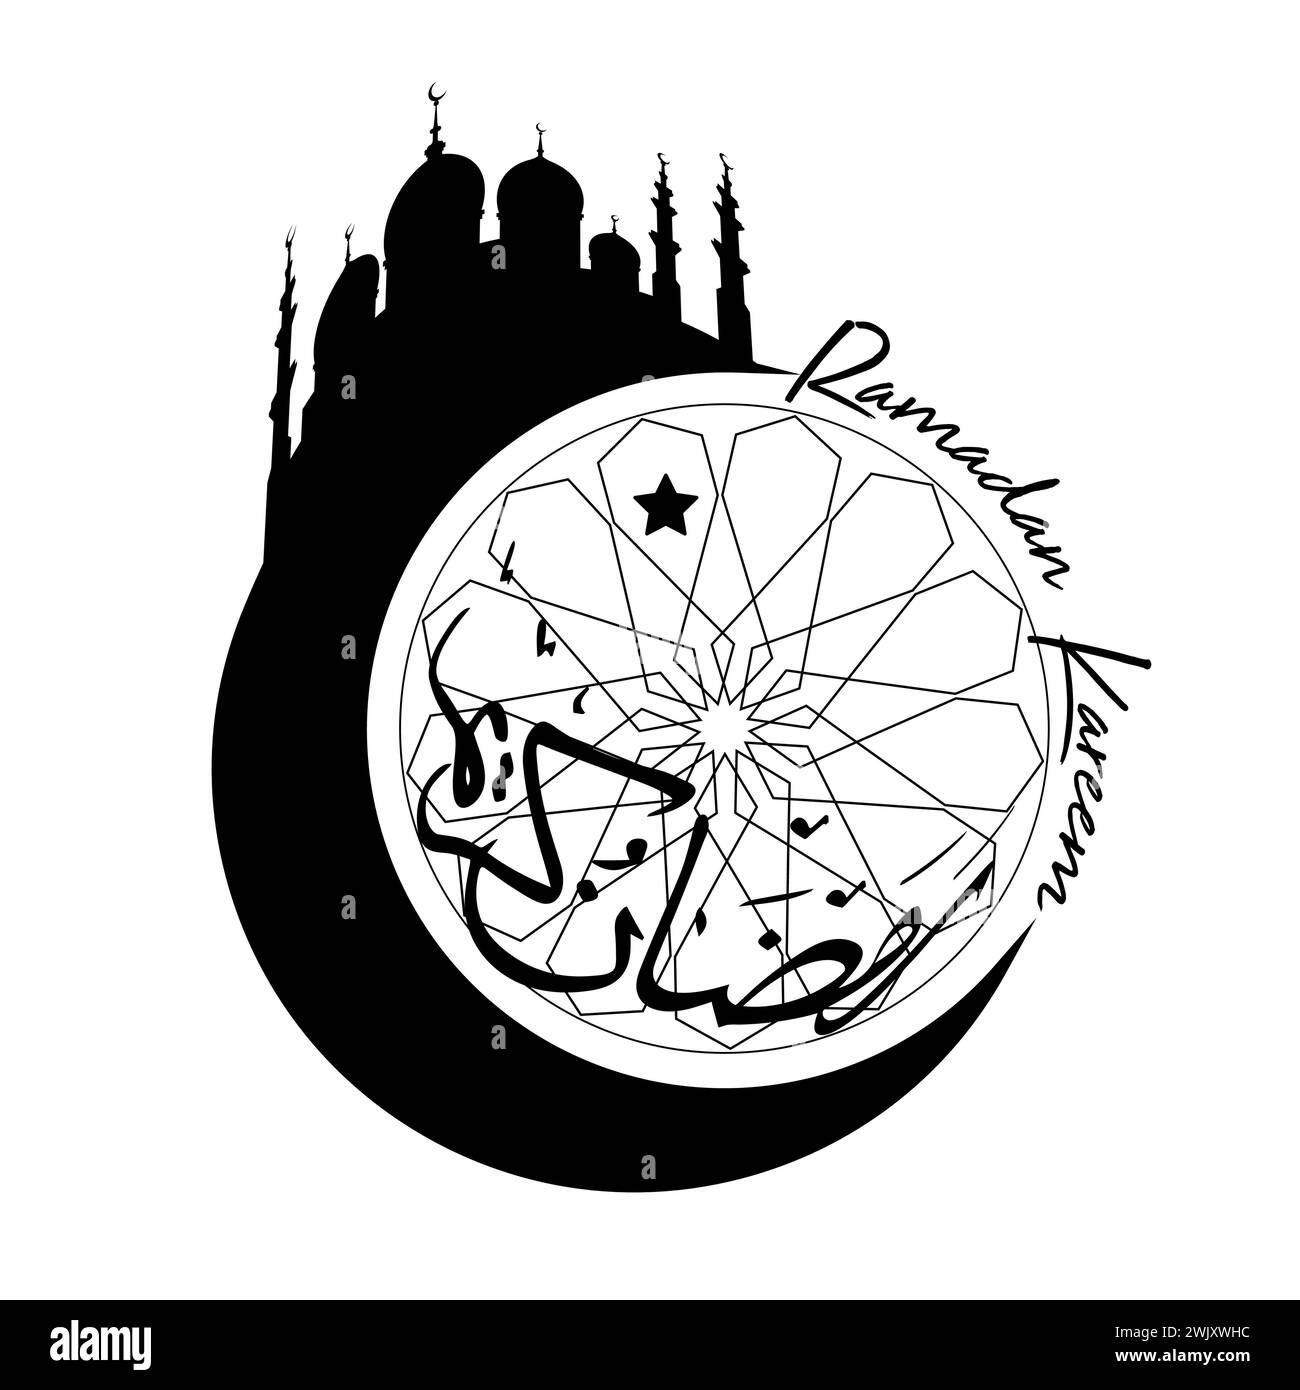 Design del logo Ramadan Kareem. La traduzione in arabo è Ramadhan. Luna mezzaluna, sagoma della moschea e tradizionale cornice islamica, design arabo vettoriale Illustrazione Vettoriale